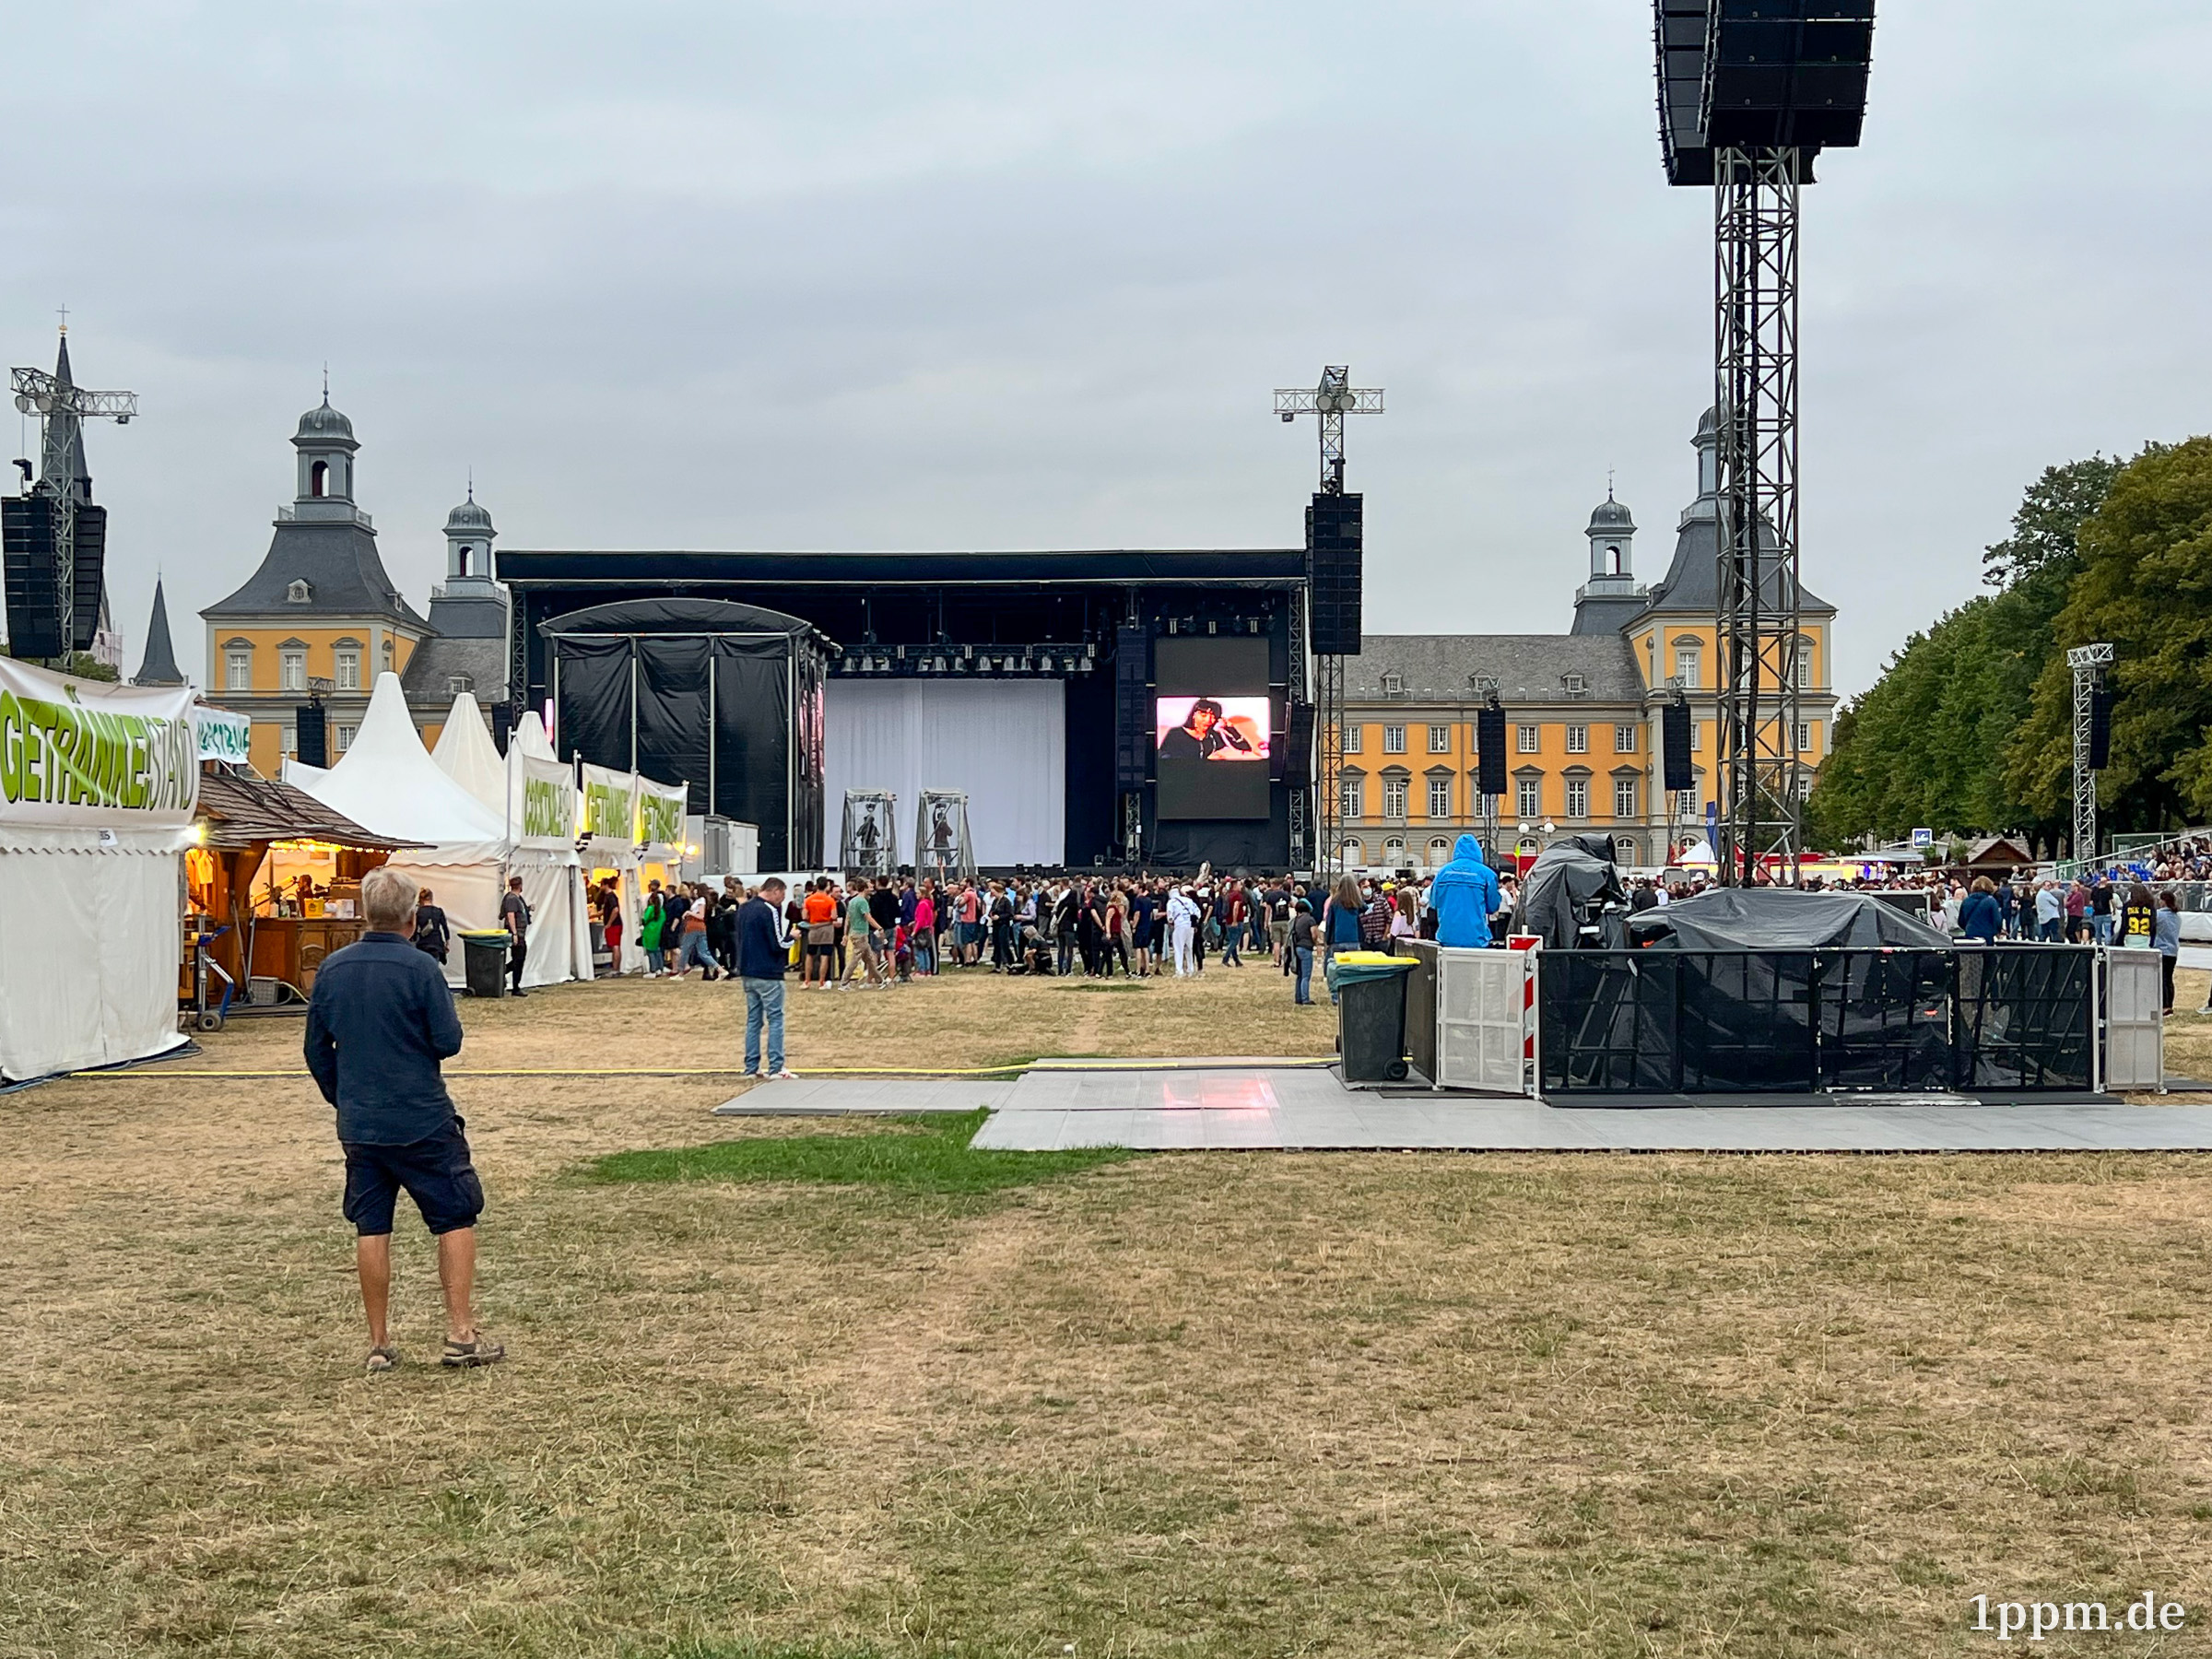 Eine Wiese mit Bühne und Getränkeständen, hinter der Bühne sieht man das gelbe Uni-Bonn-Gebäude